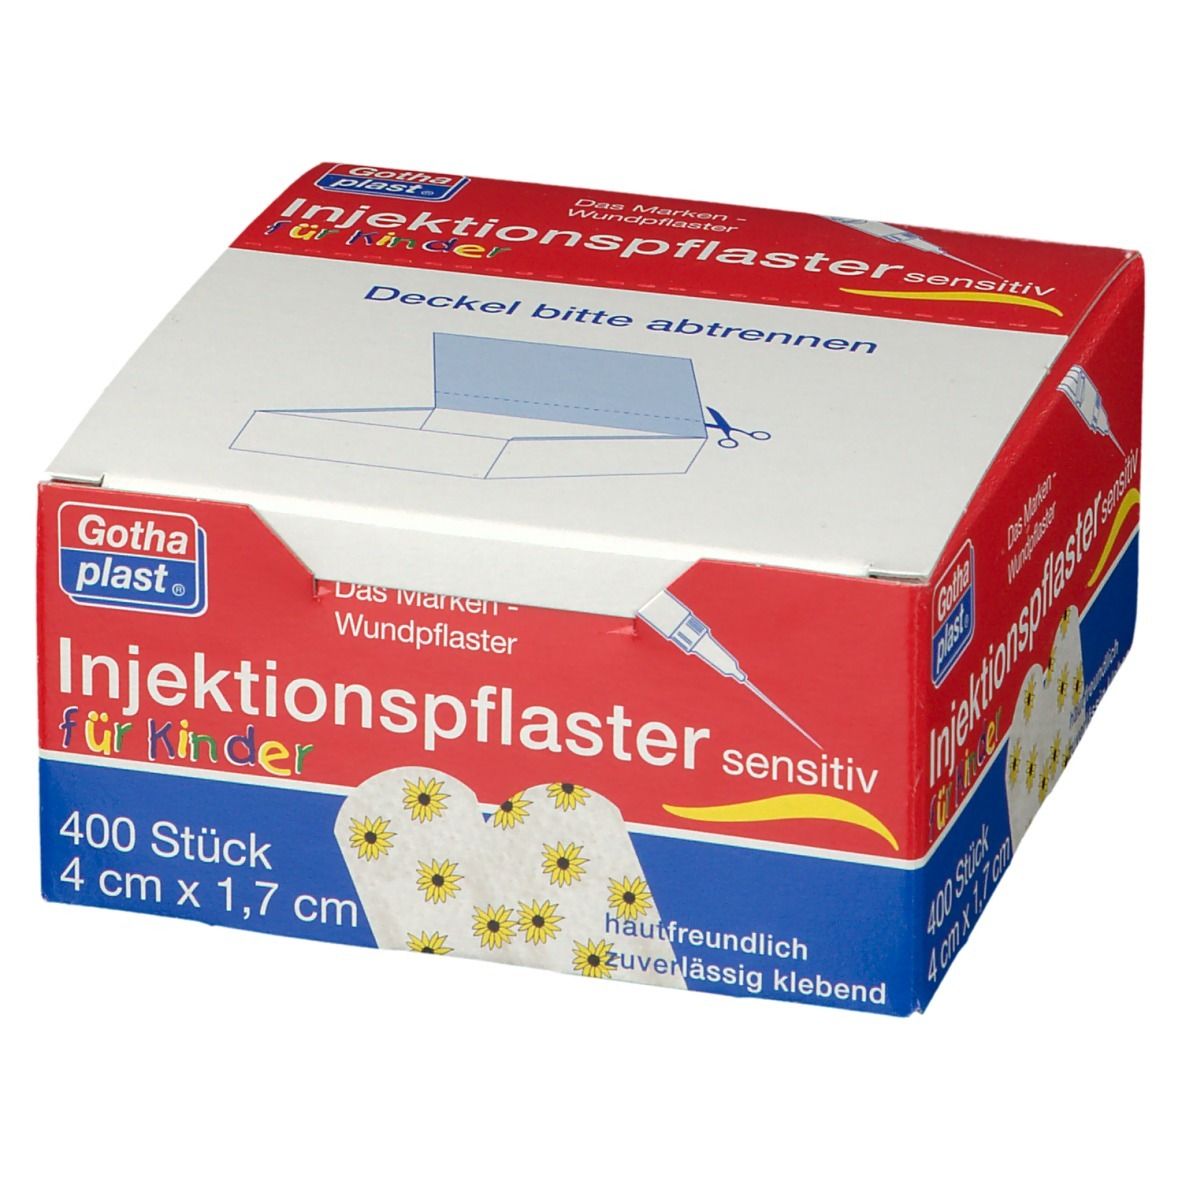 Gothaplast® Injektionspflaster für Kinder 1,7 cm x 4 cm